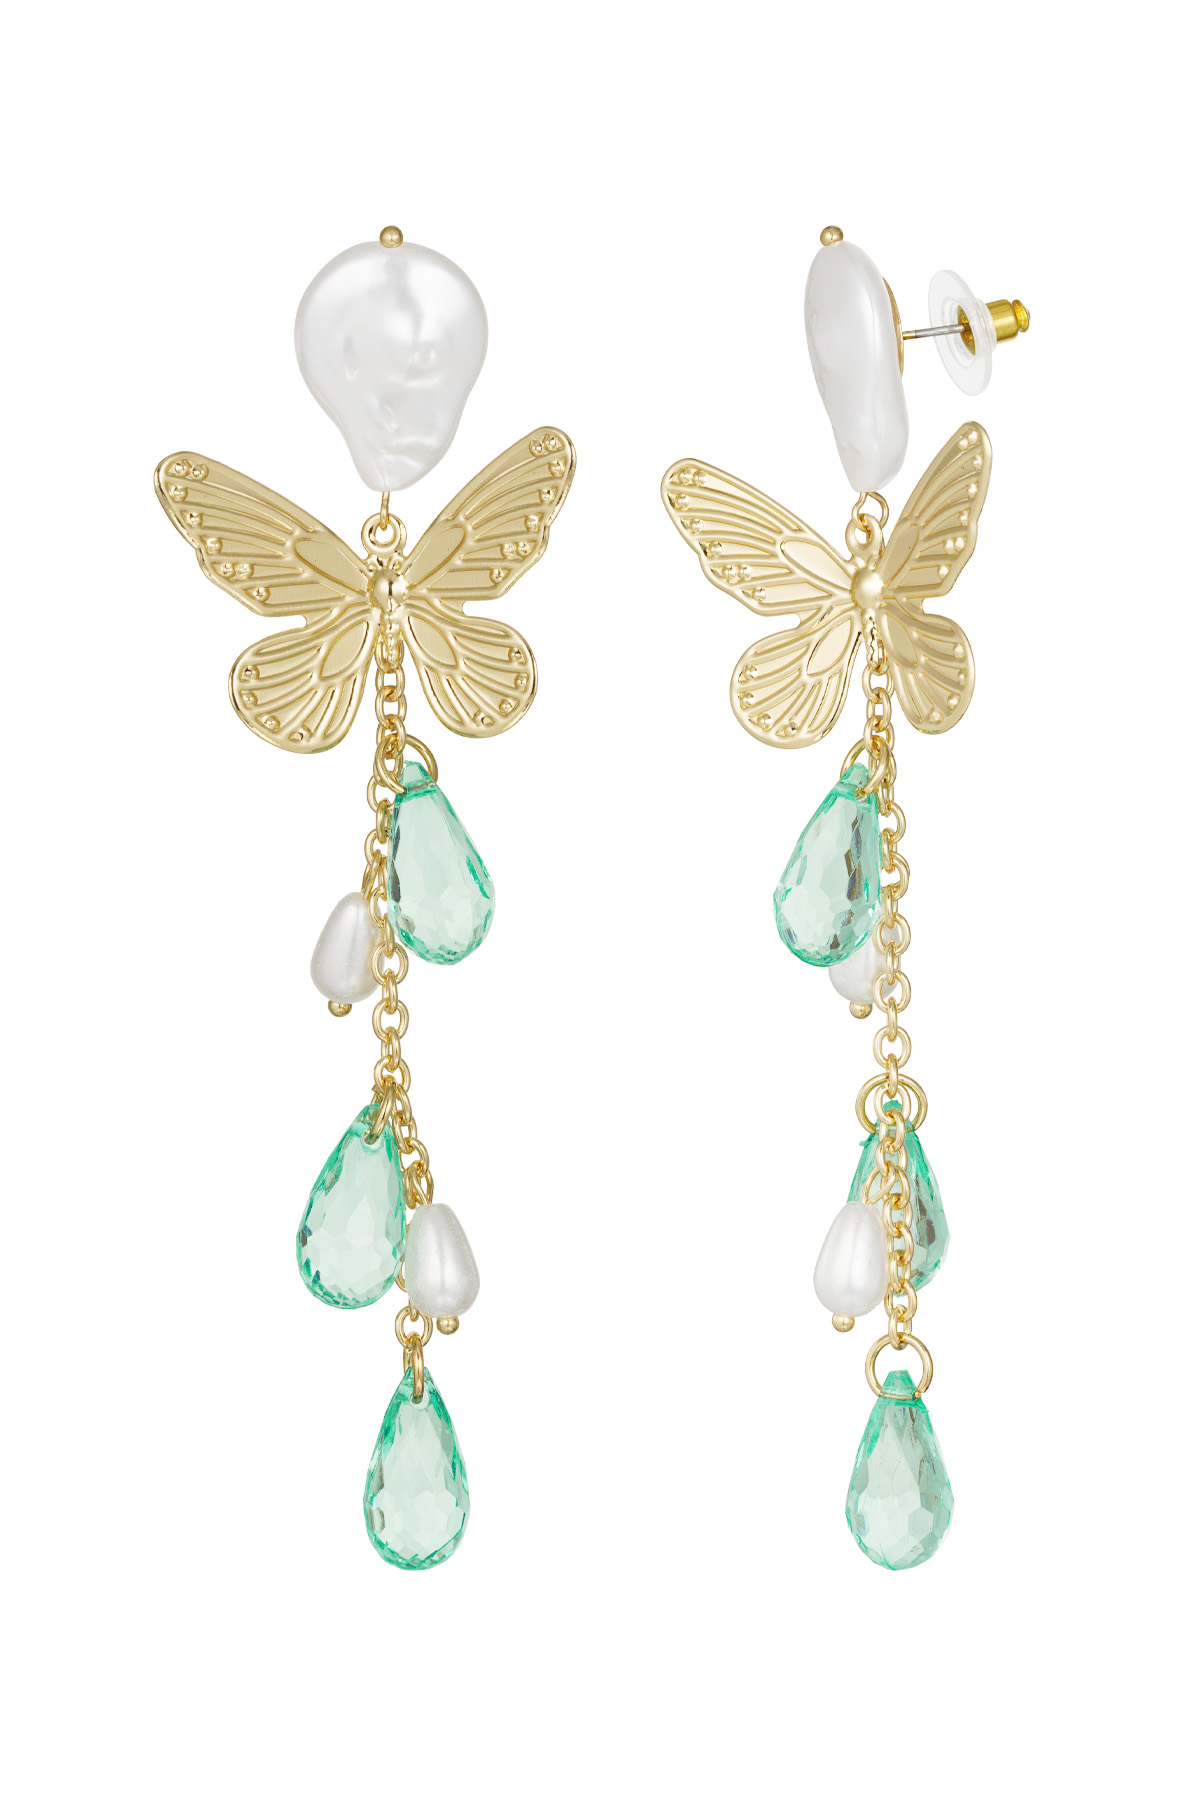 Butterfly earrings - light blue